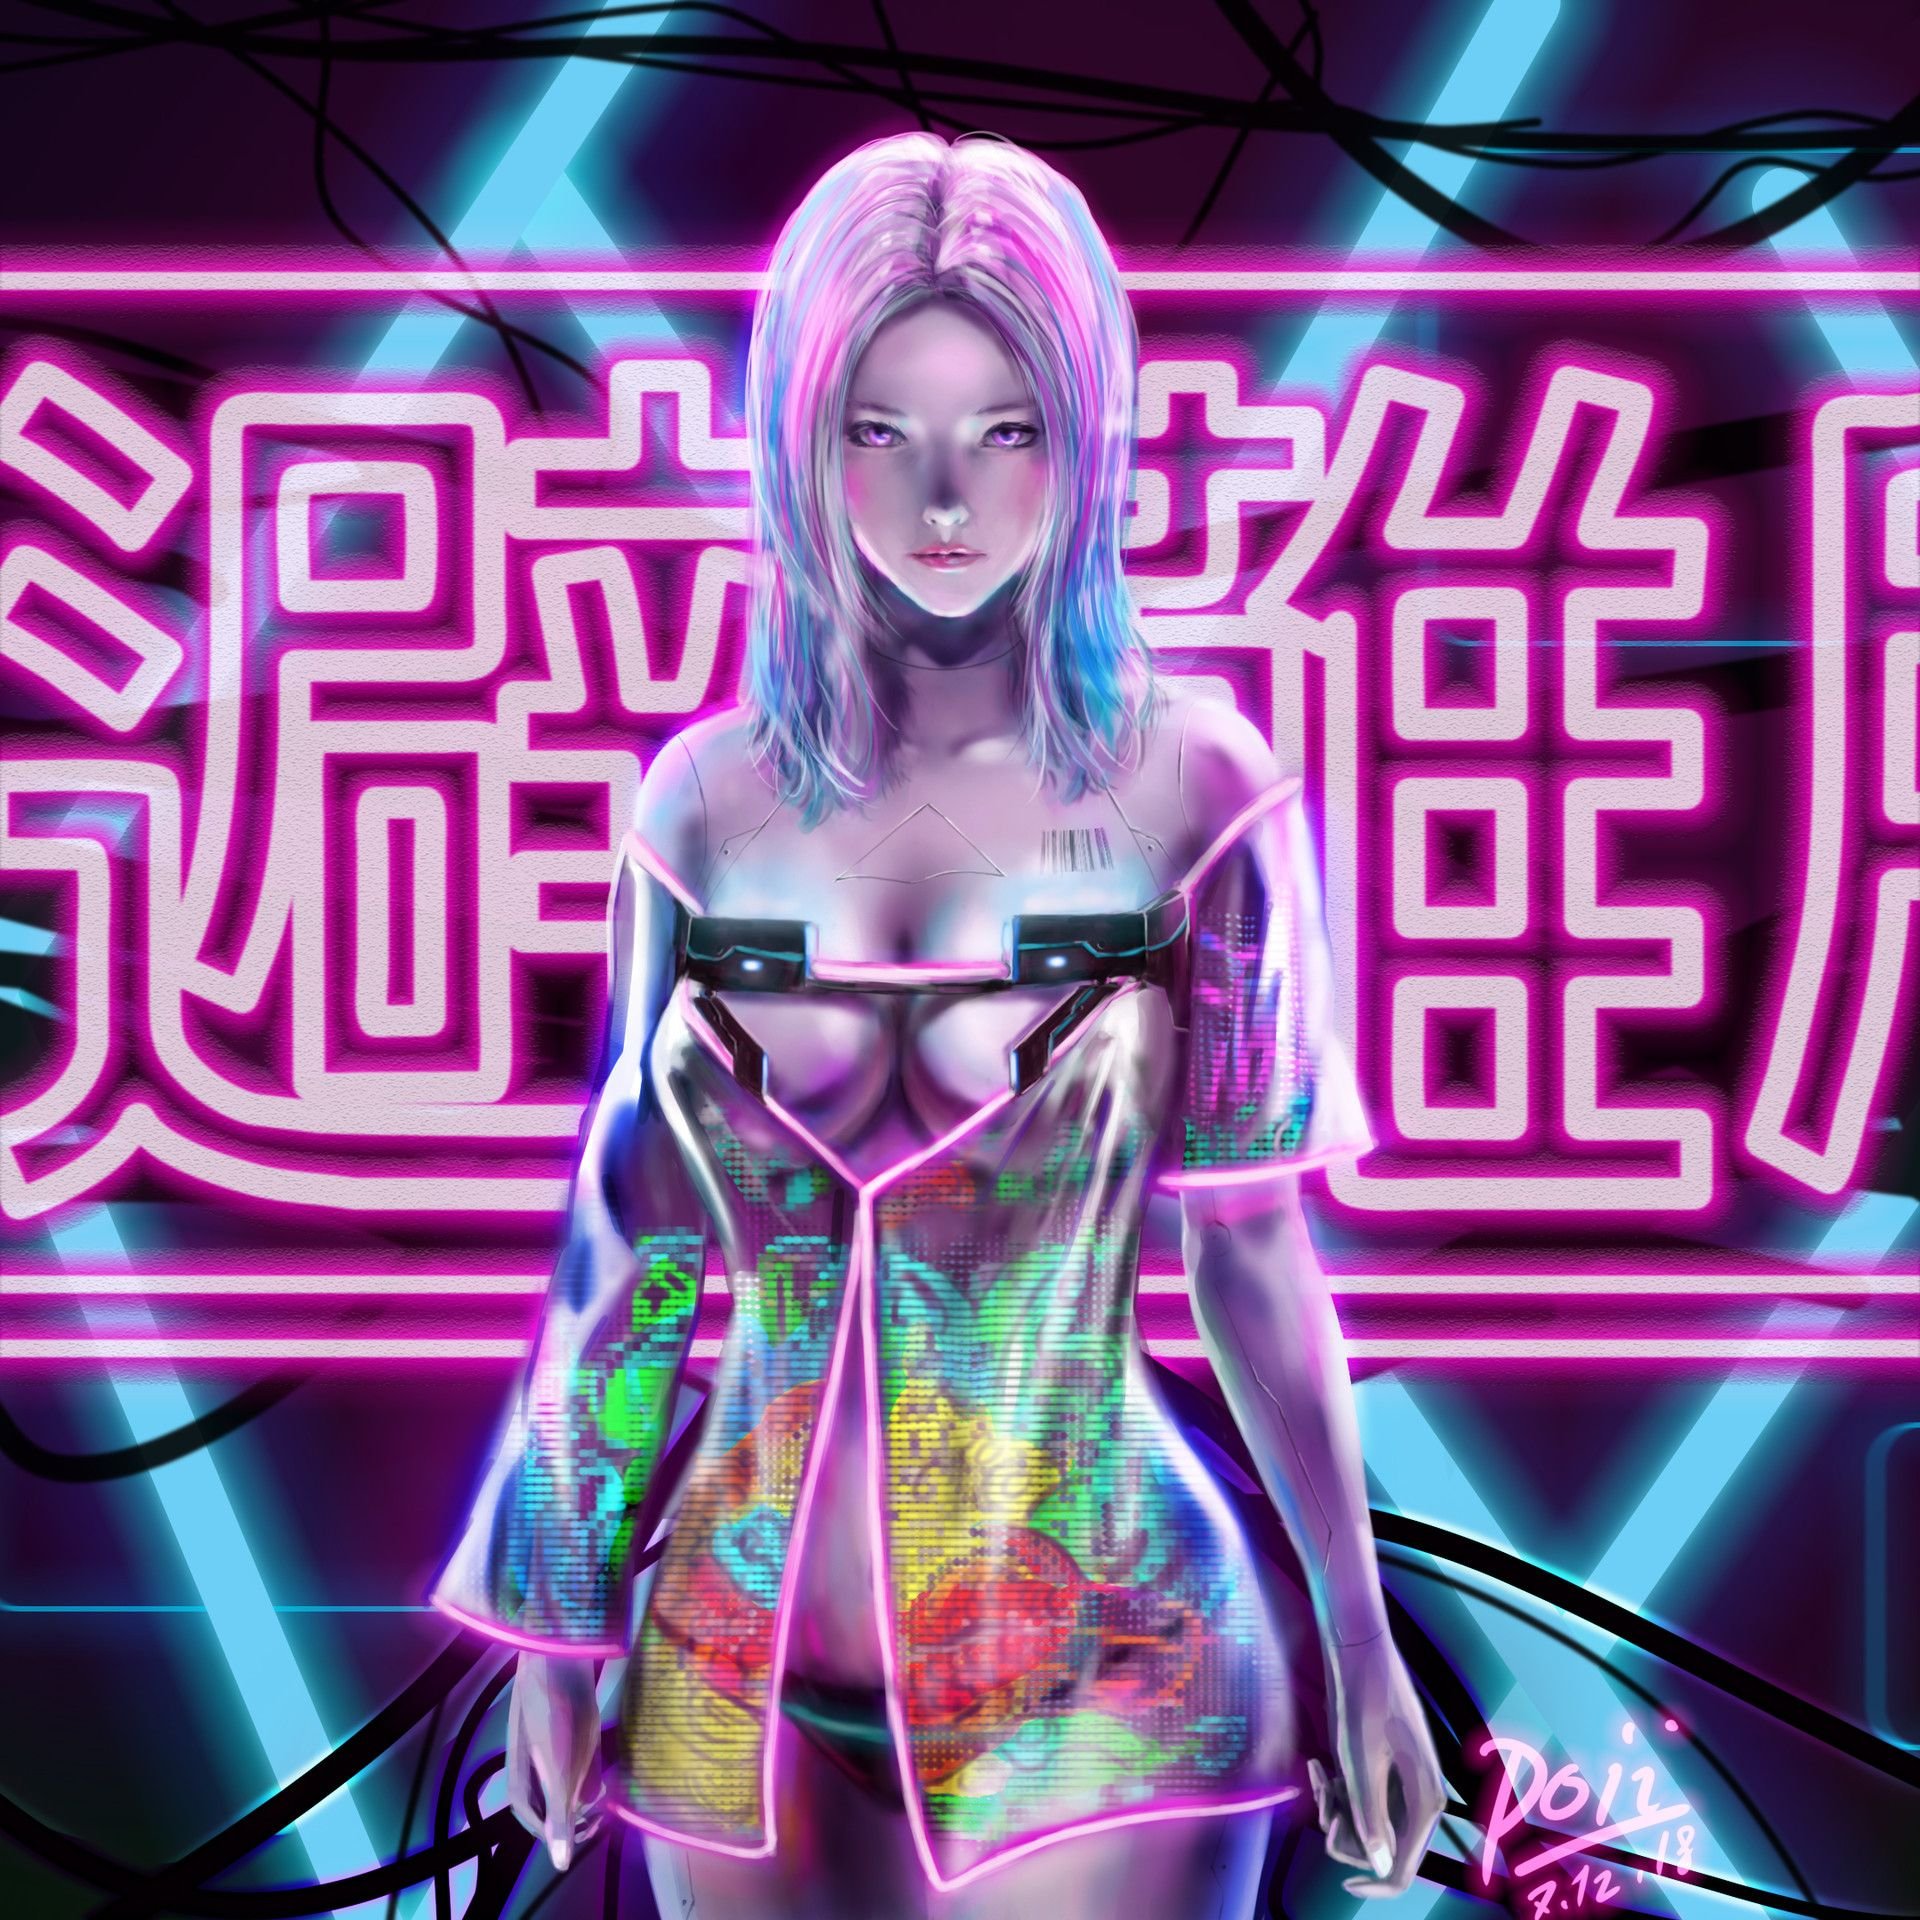 Neon girls cyberpunk фото 46